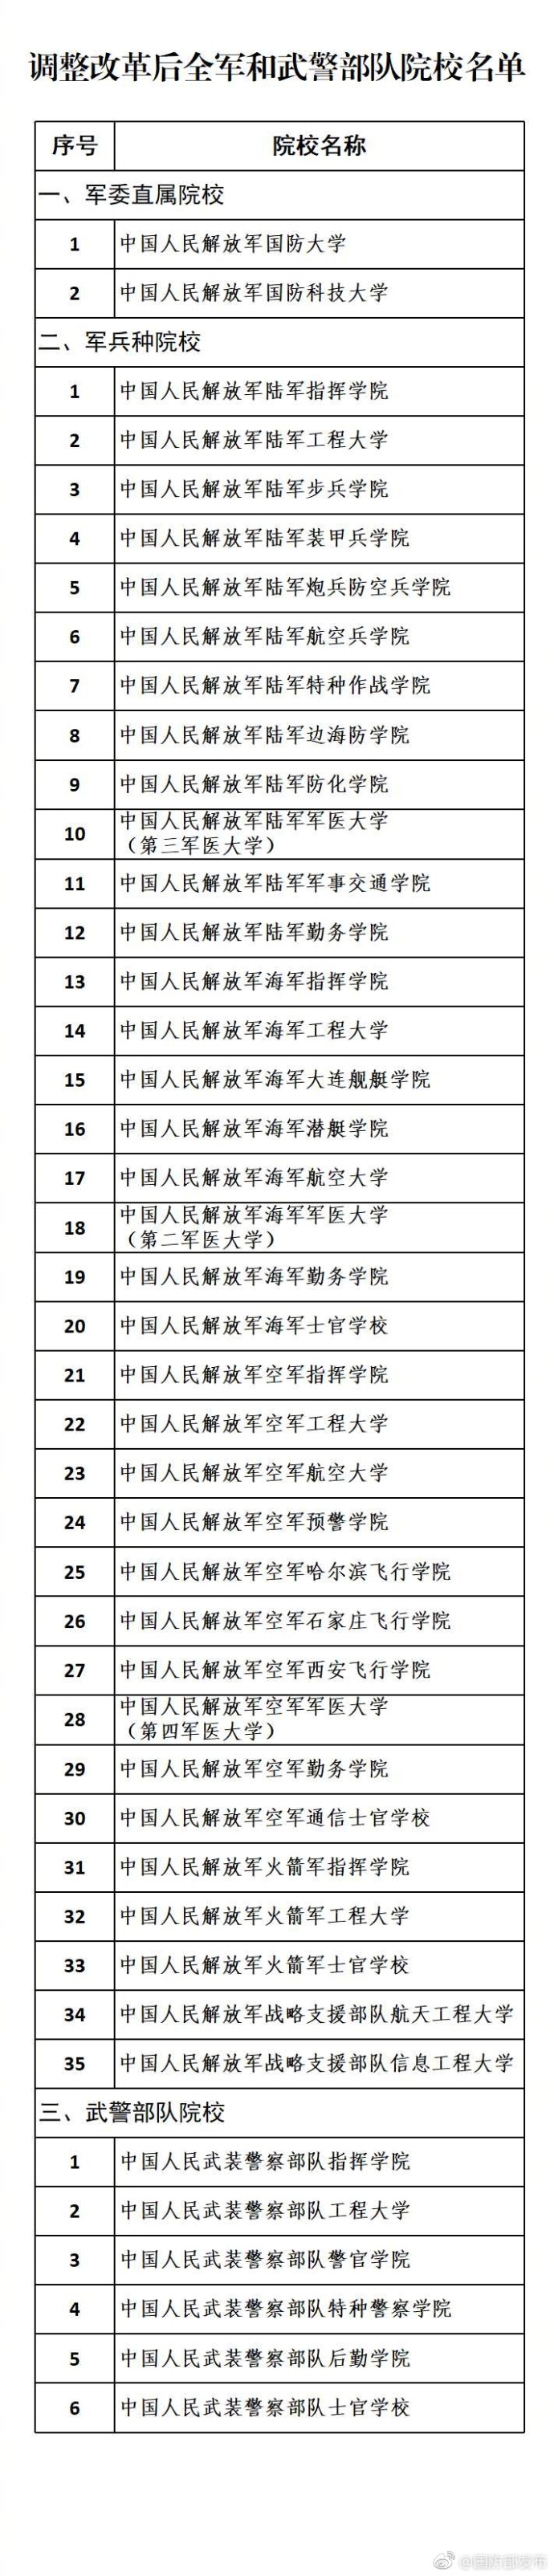 国防部公布调整改革后43所军队院校名称(名单)